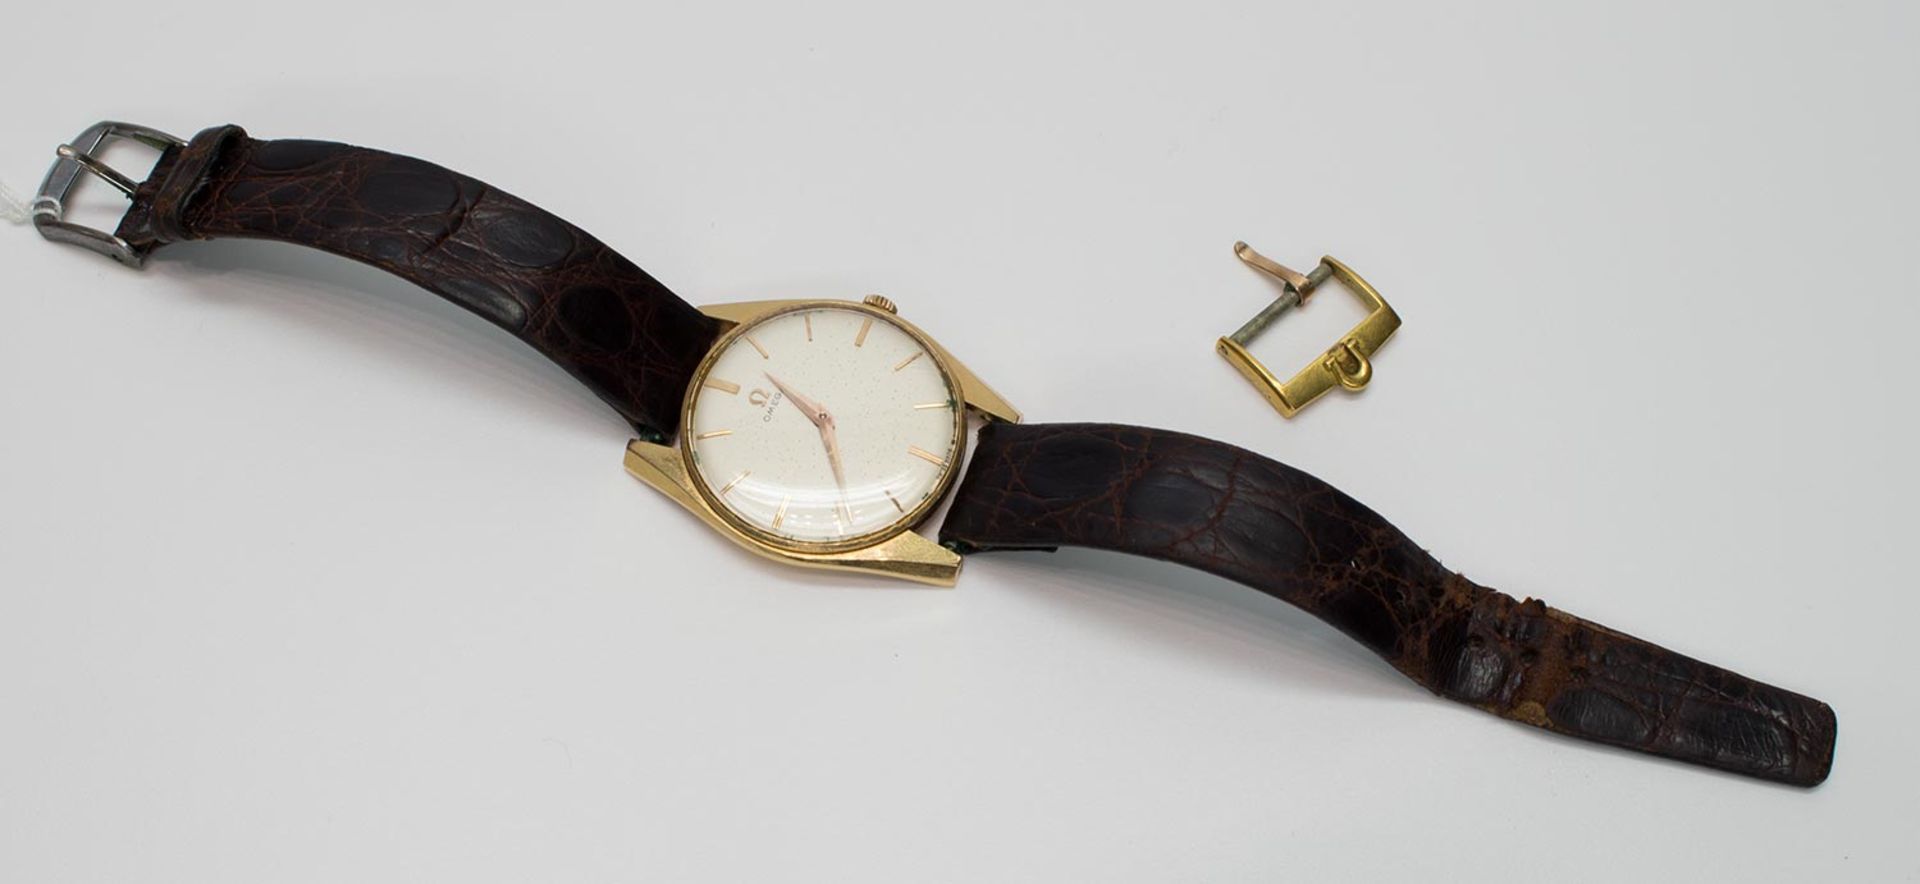 HerrenarmbanduhrOmega 511, Uhrenmanufaktur Omega/ Schweiz 1956, Werksnr. 16439941, 750er (18 kt.) GG